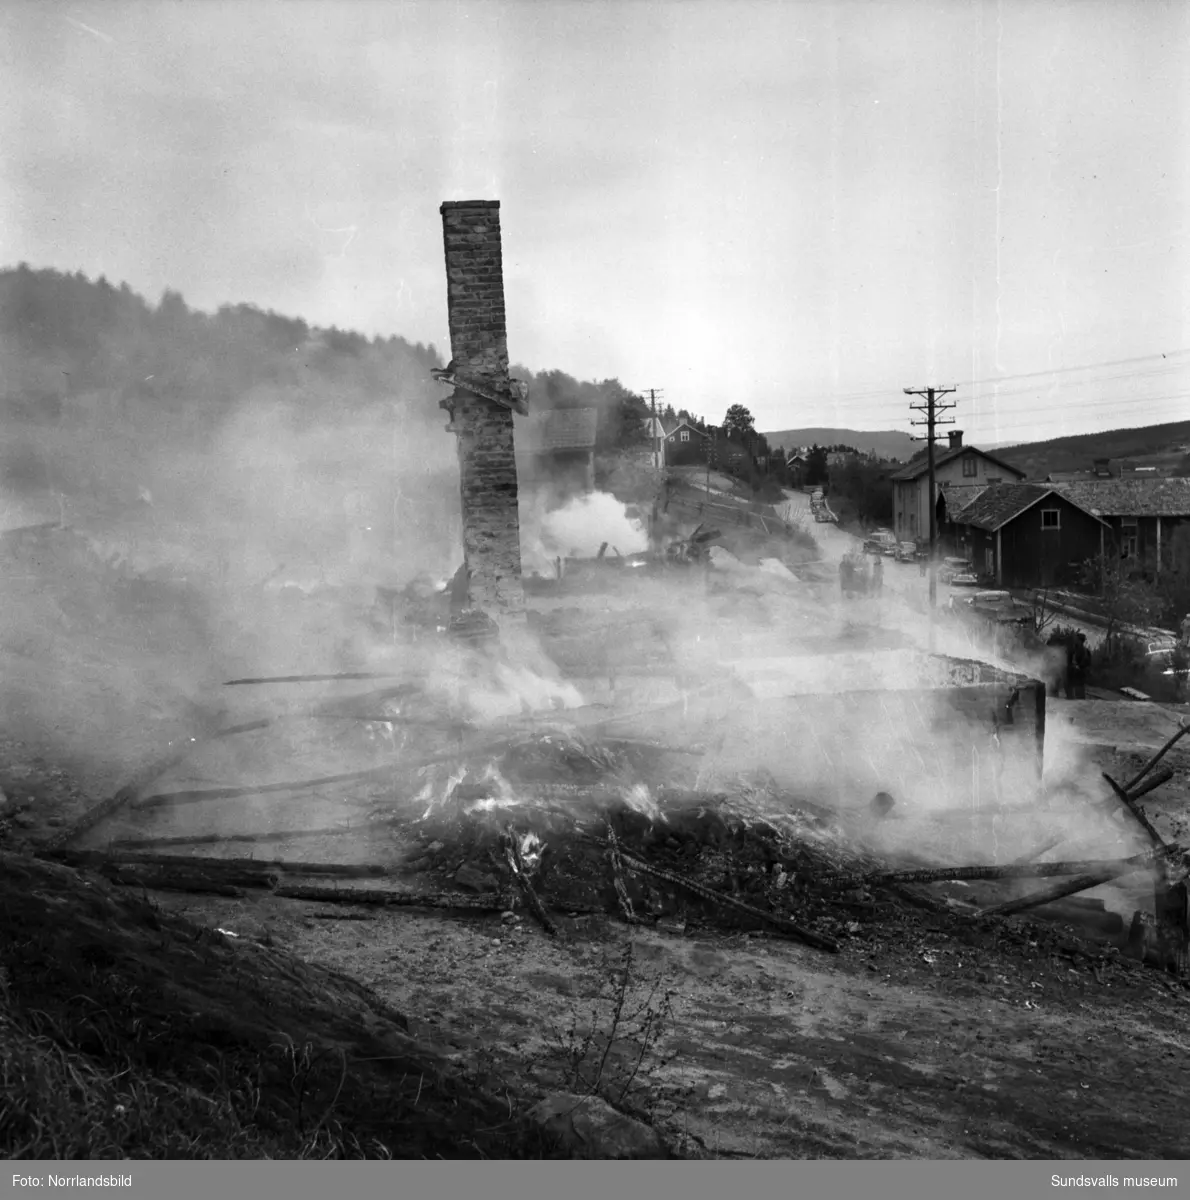 Torsten Söderbergs snickerifabrik i Lillro, Selånger, brann ner till grunden 1953. På bara en halvtimme gick den stora träbyggnaden upp i rök tillsammans med en hel del maskiner och såväl färdiga som halvfärdiga produkter, främst köksinredningar. Alla människor som fanns i fabriken hann dock ta sig ut.